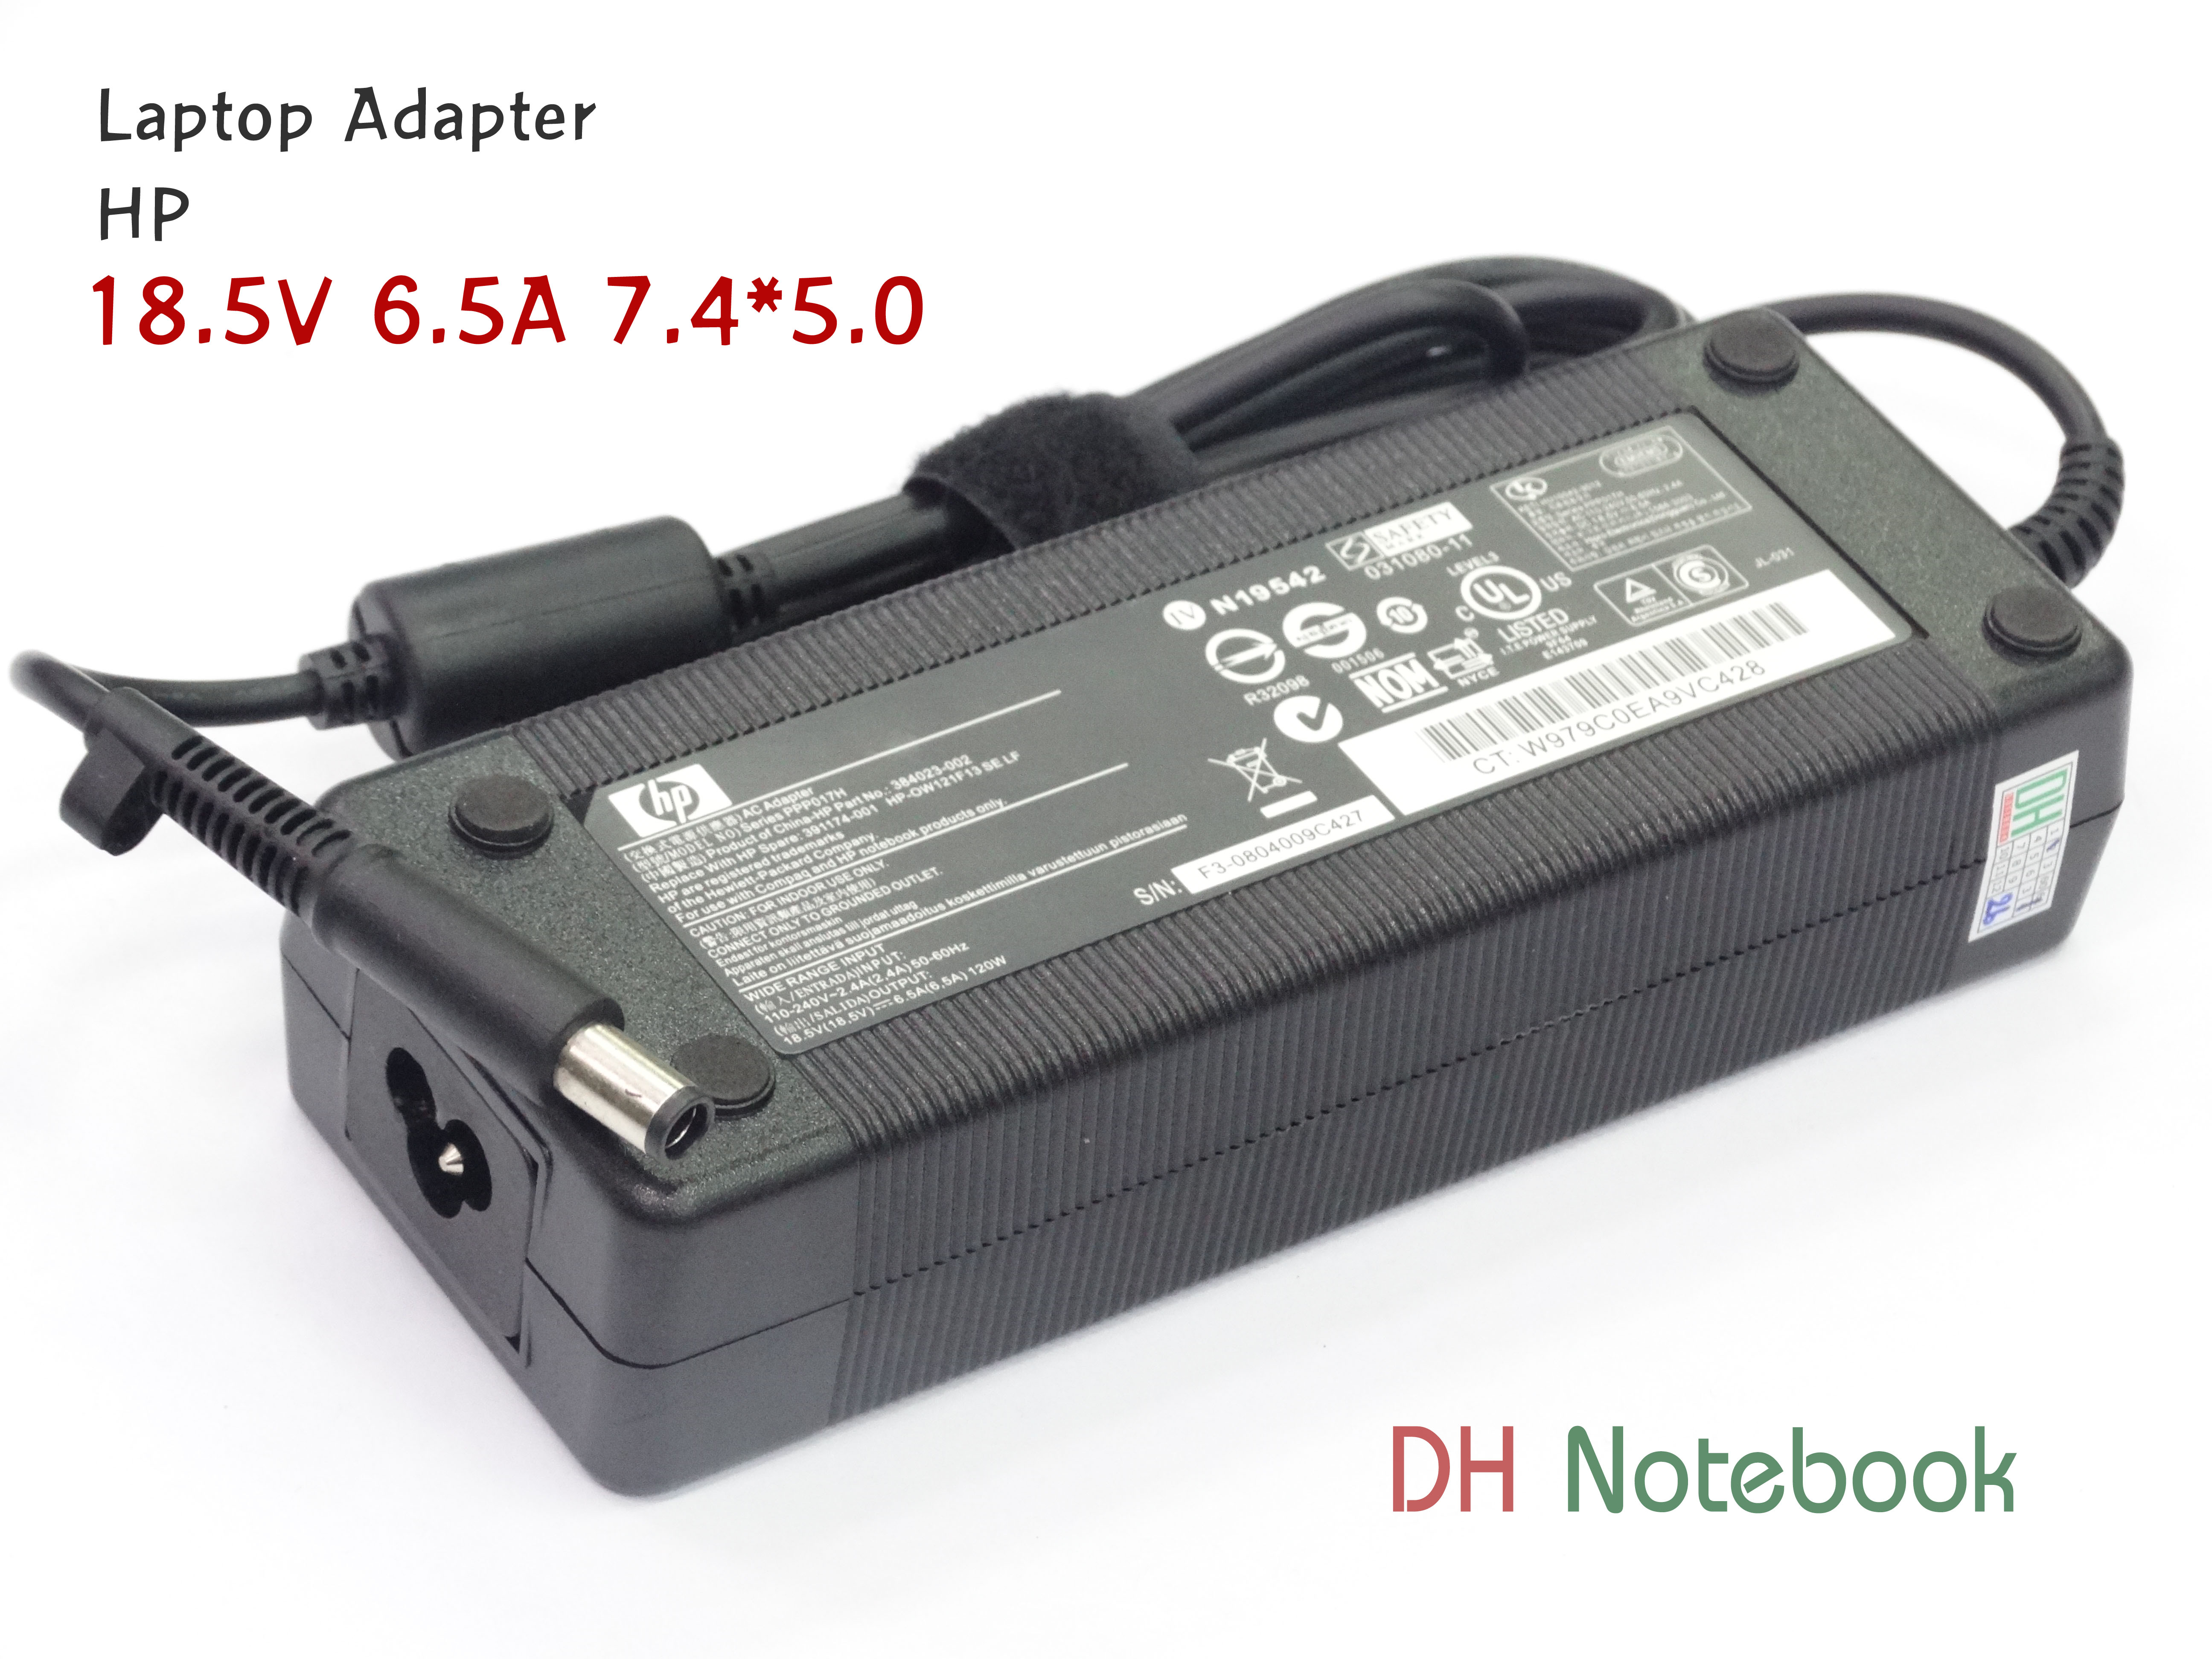 Adapter HP 18.5V 6.5A (7.4*5.0) ของแท้